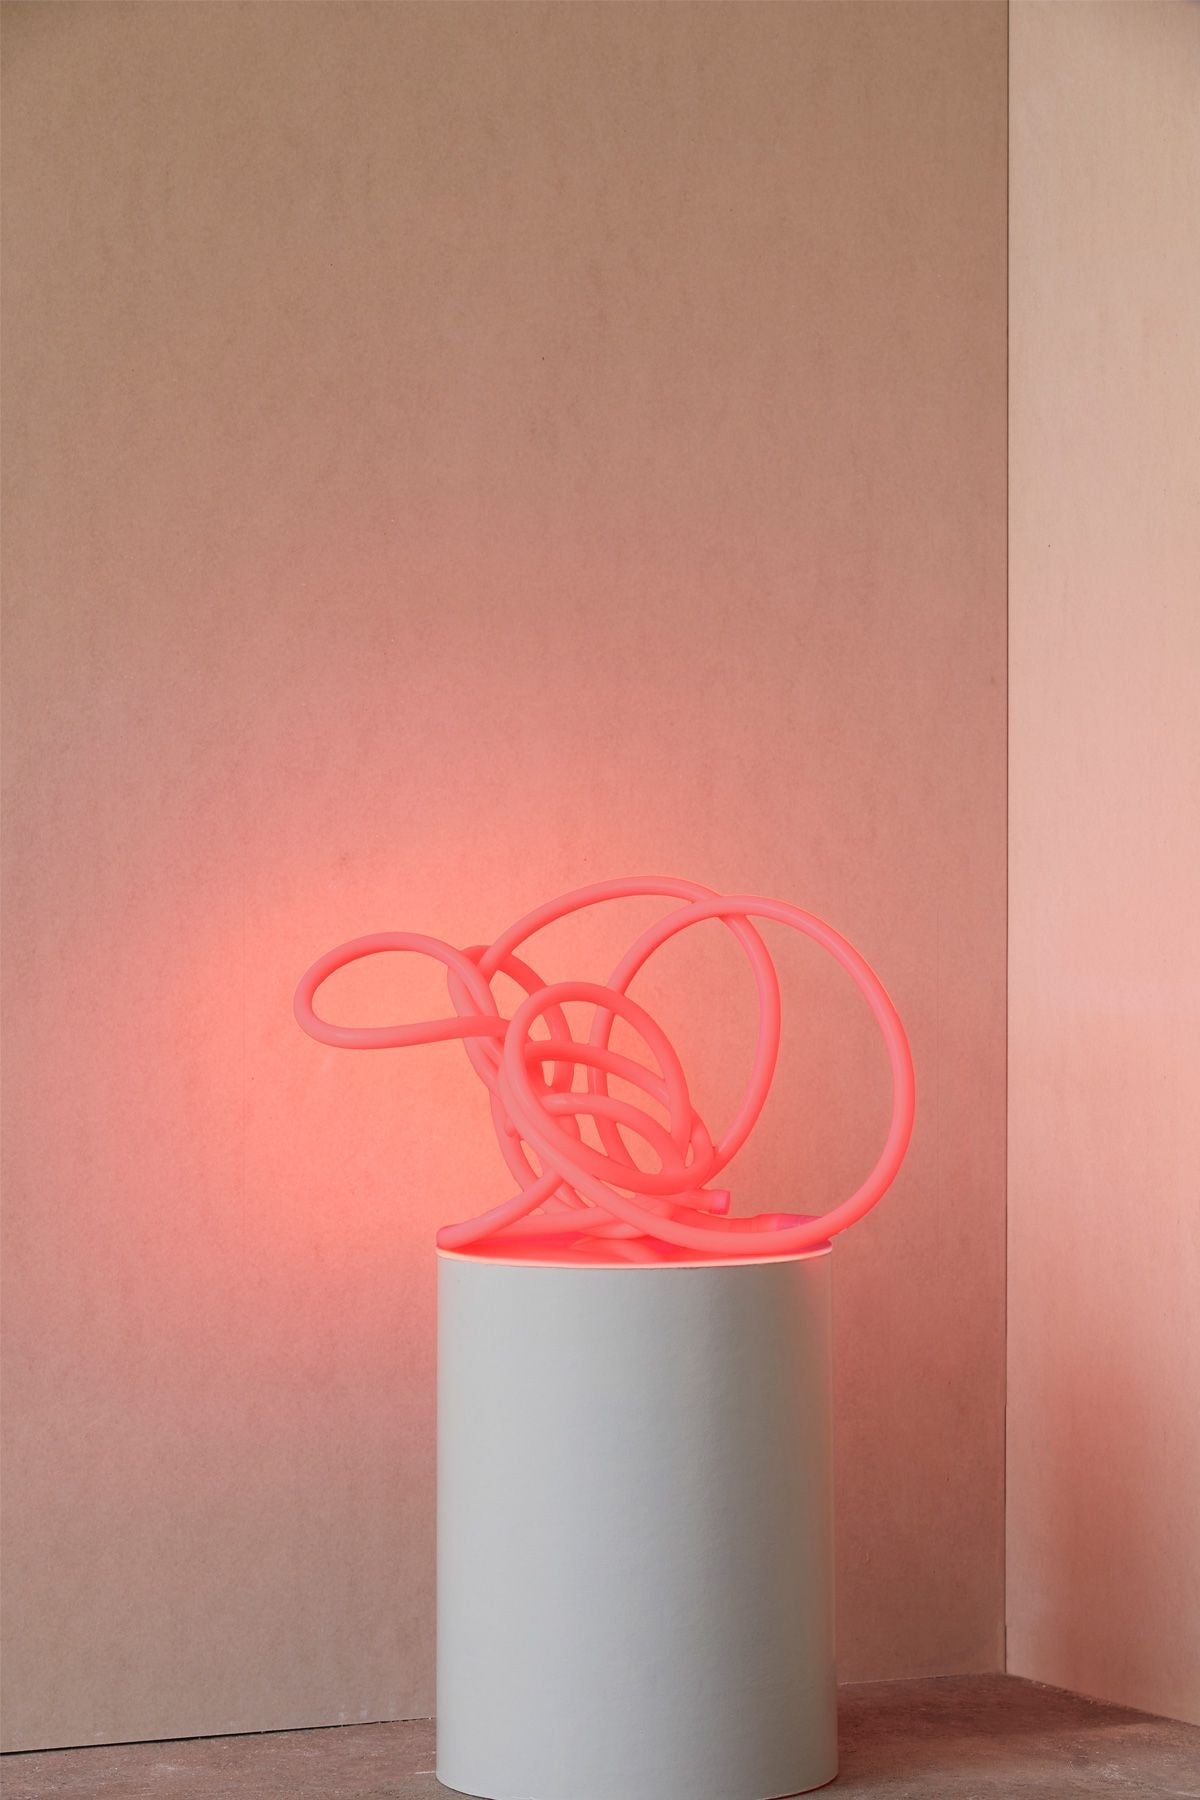 Studio over flexbuislamp 5 m, warm rood